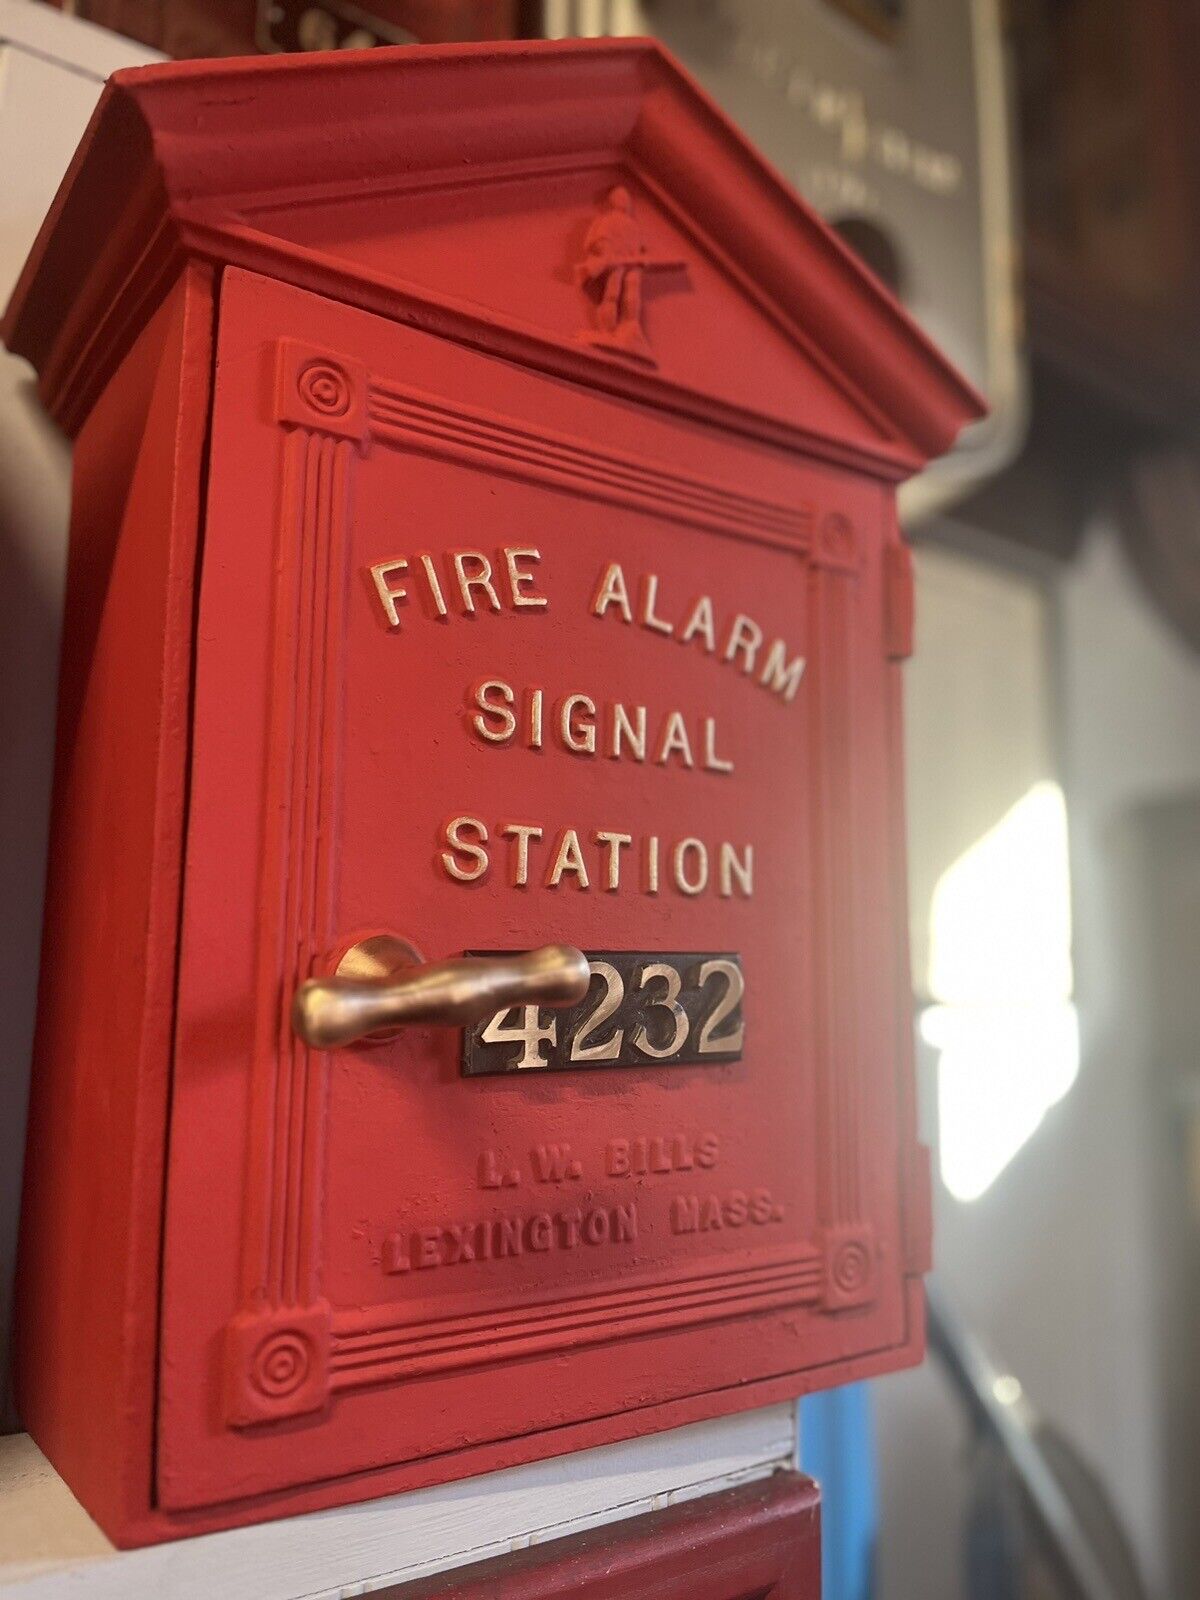 LW Bills Gamewell Fire Alarm Box